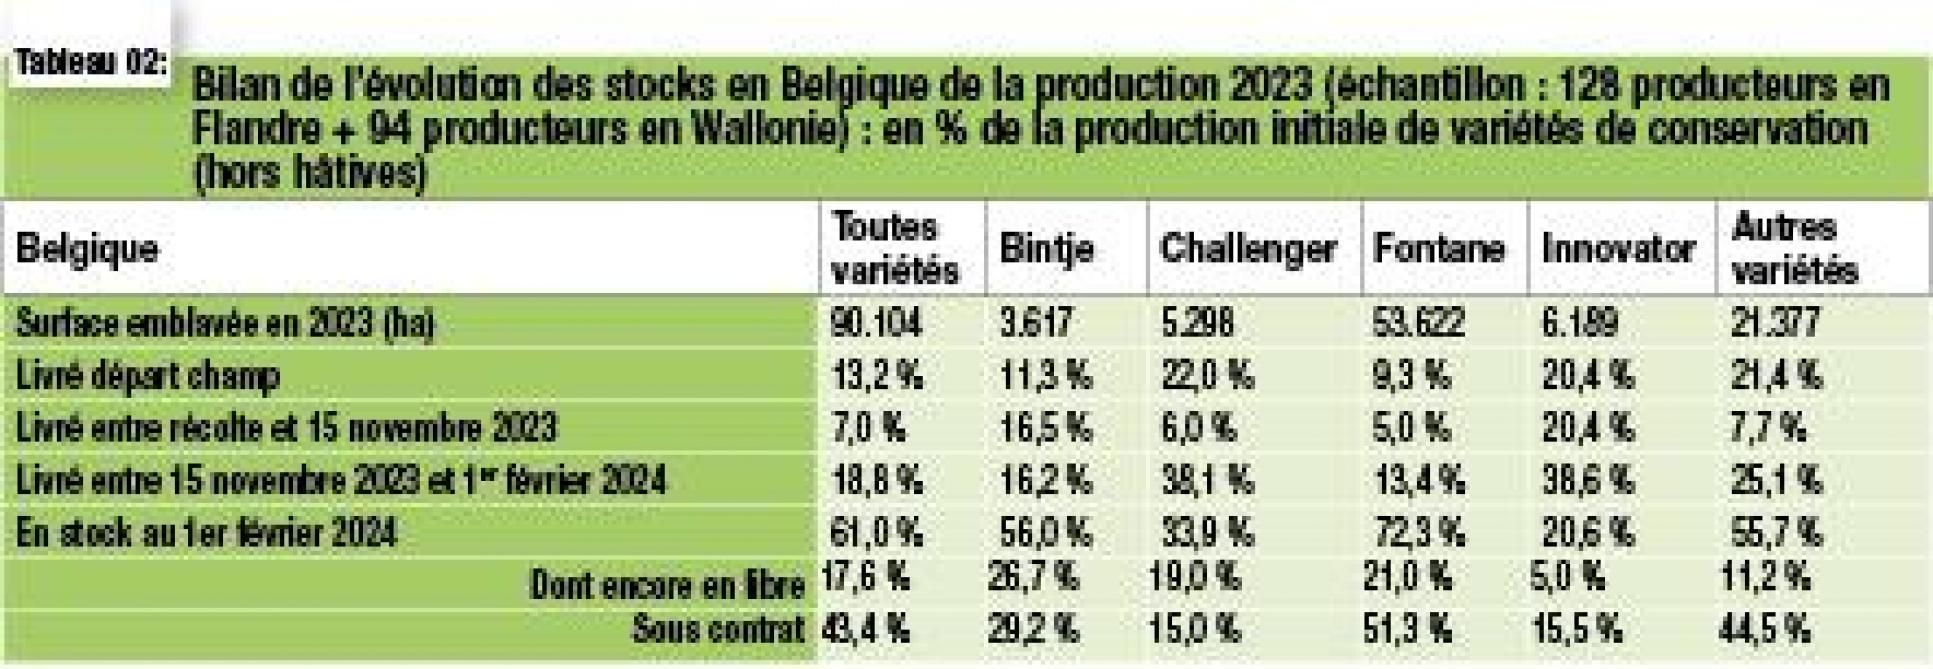 08-4102-évolution des stocks en Belgique